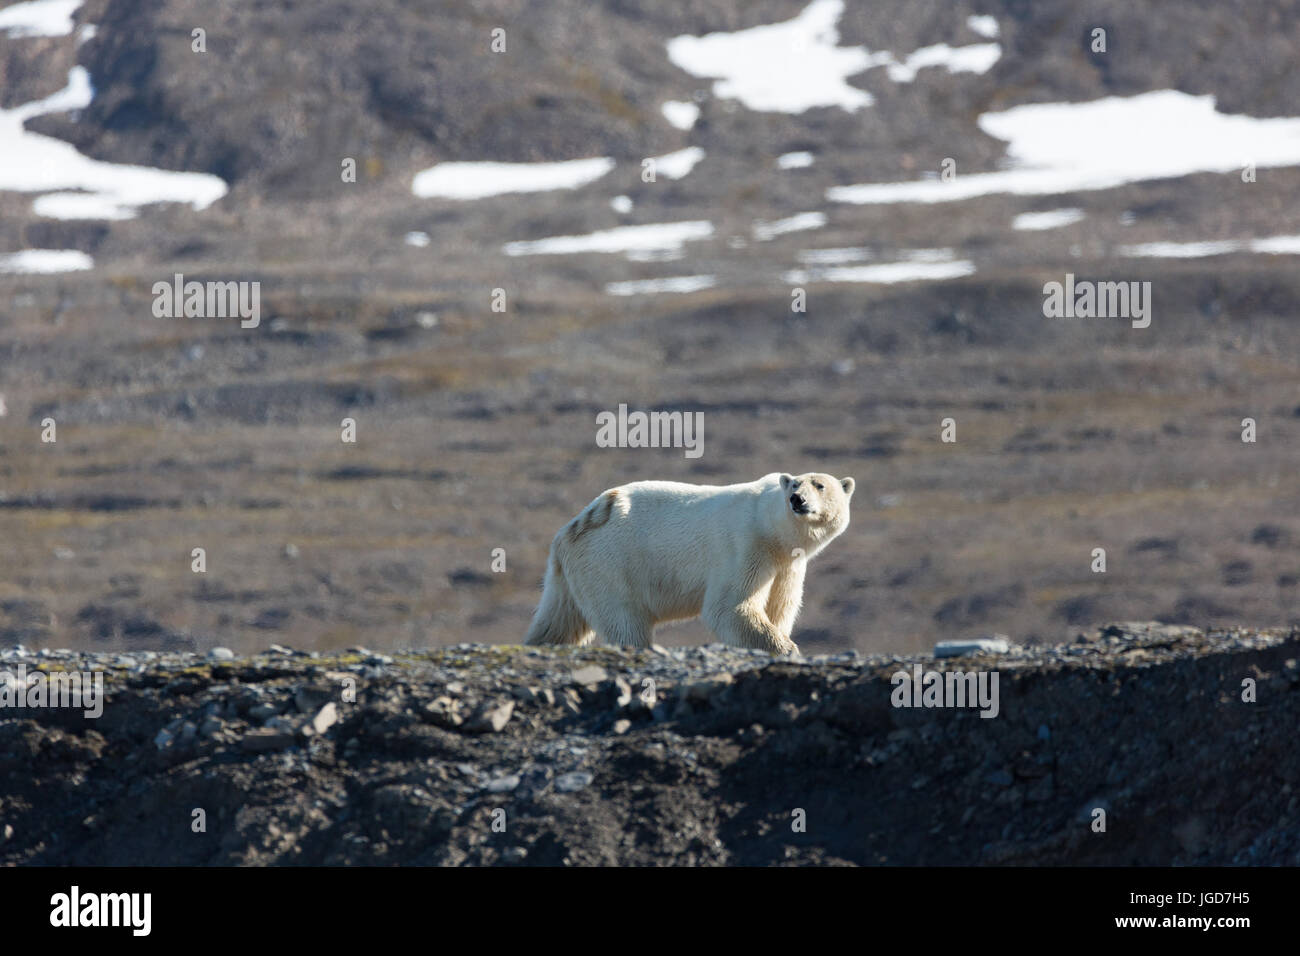 Un solitario oso polar con un número de identificación que patrulla pintado en una sección de la costa en busca de alimentos en Spitzbergen Foto de stock